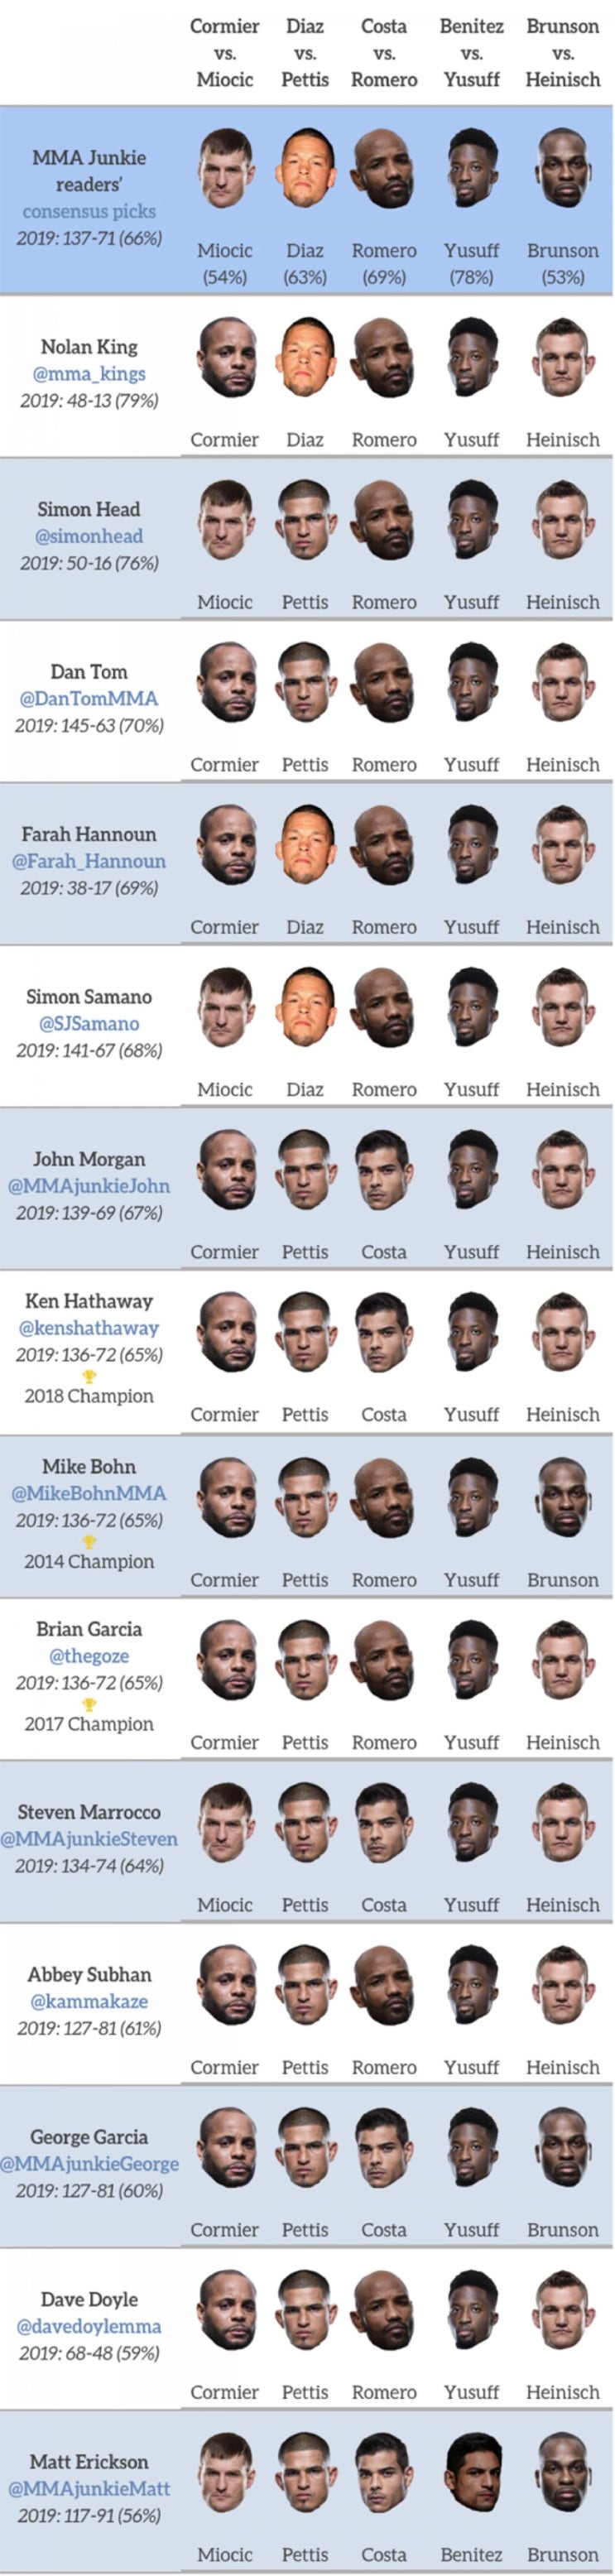 UFC 241: 코미에 vs 미오치치 미디어 예상 및 배당률